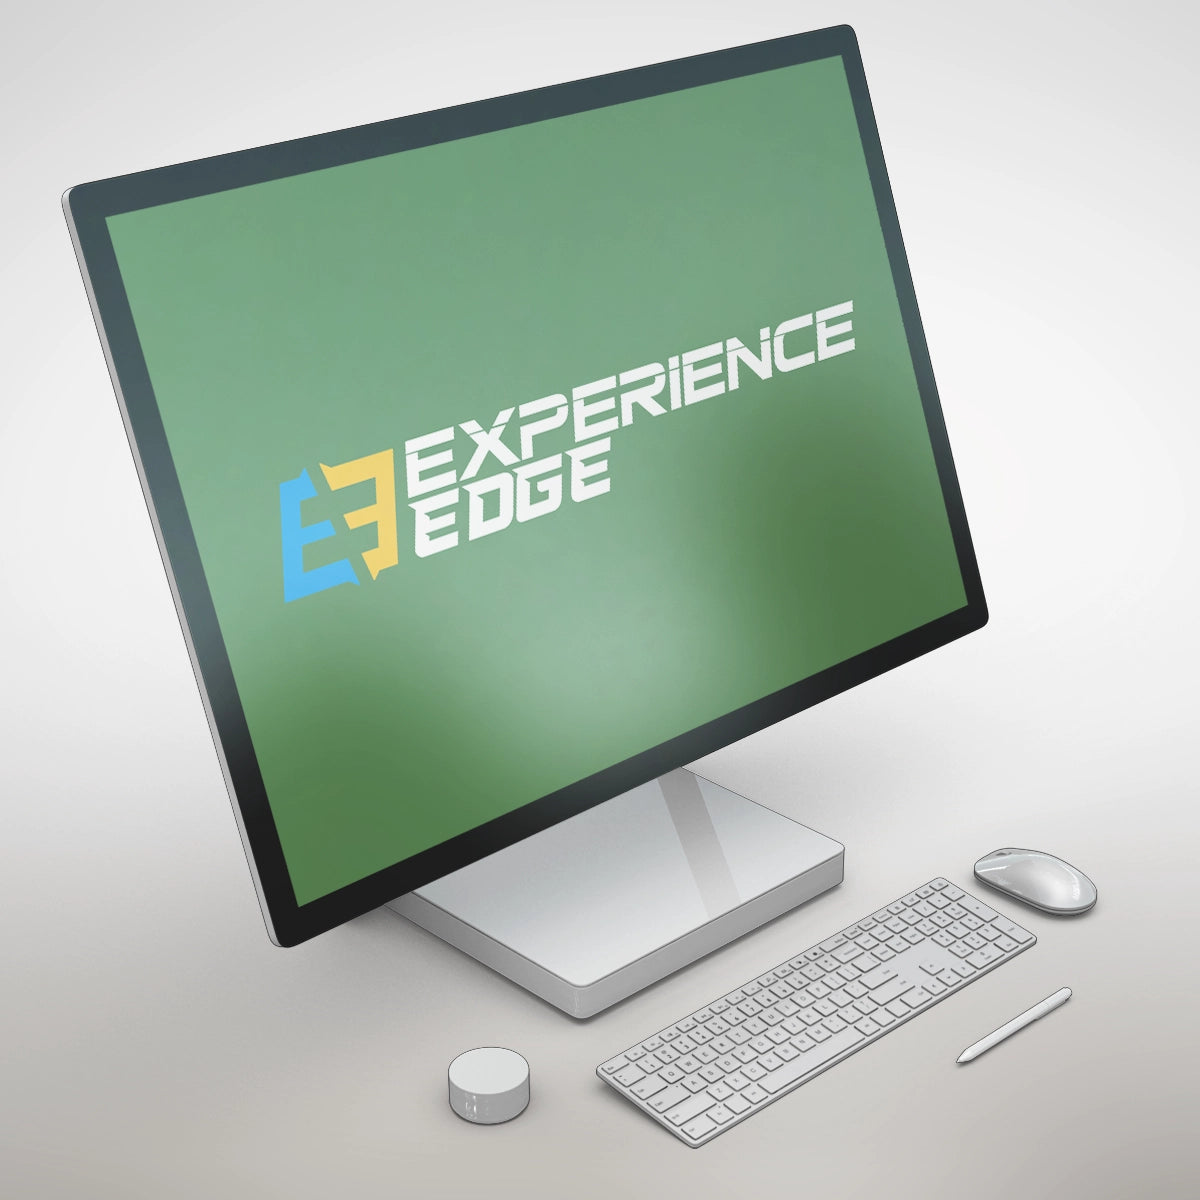 experienceedge.com